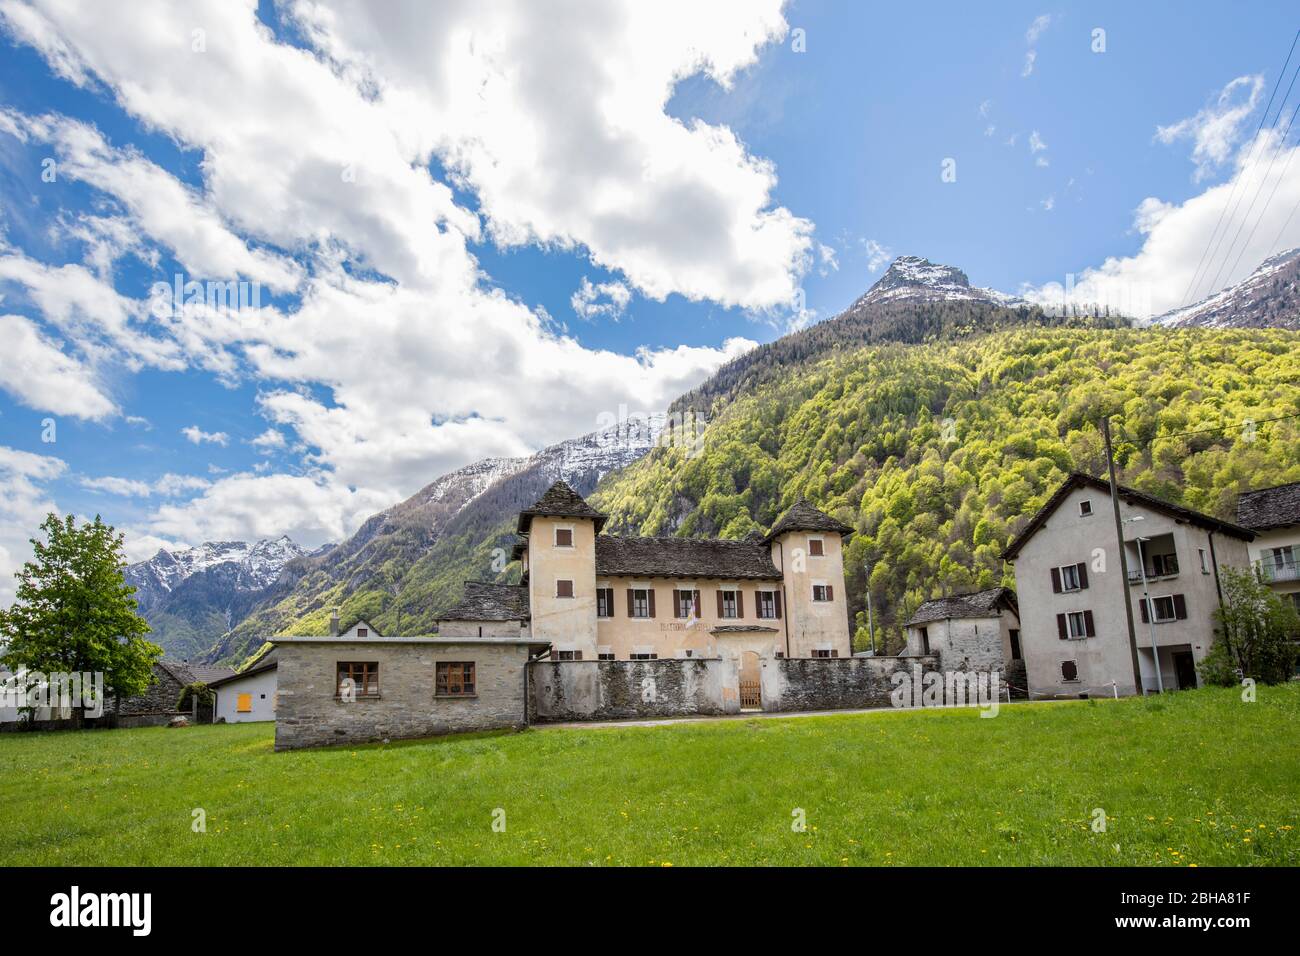 Switzerland, Alps, Ticino, Locarno, Verzasca Valley, Brione Verzasca, Castello, Castle Stock Photo